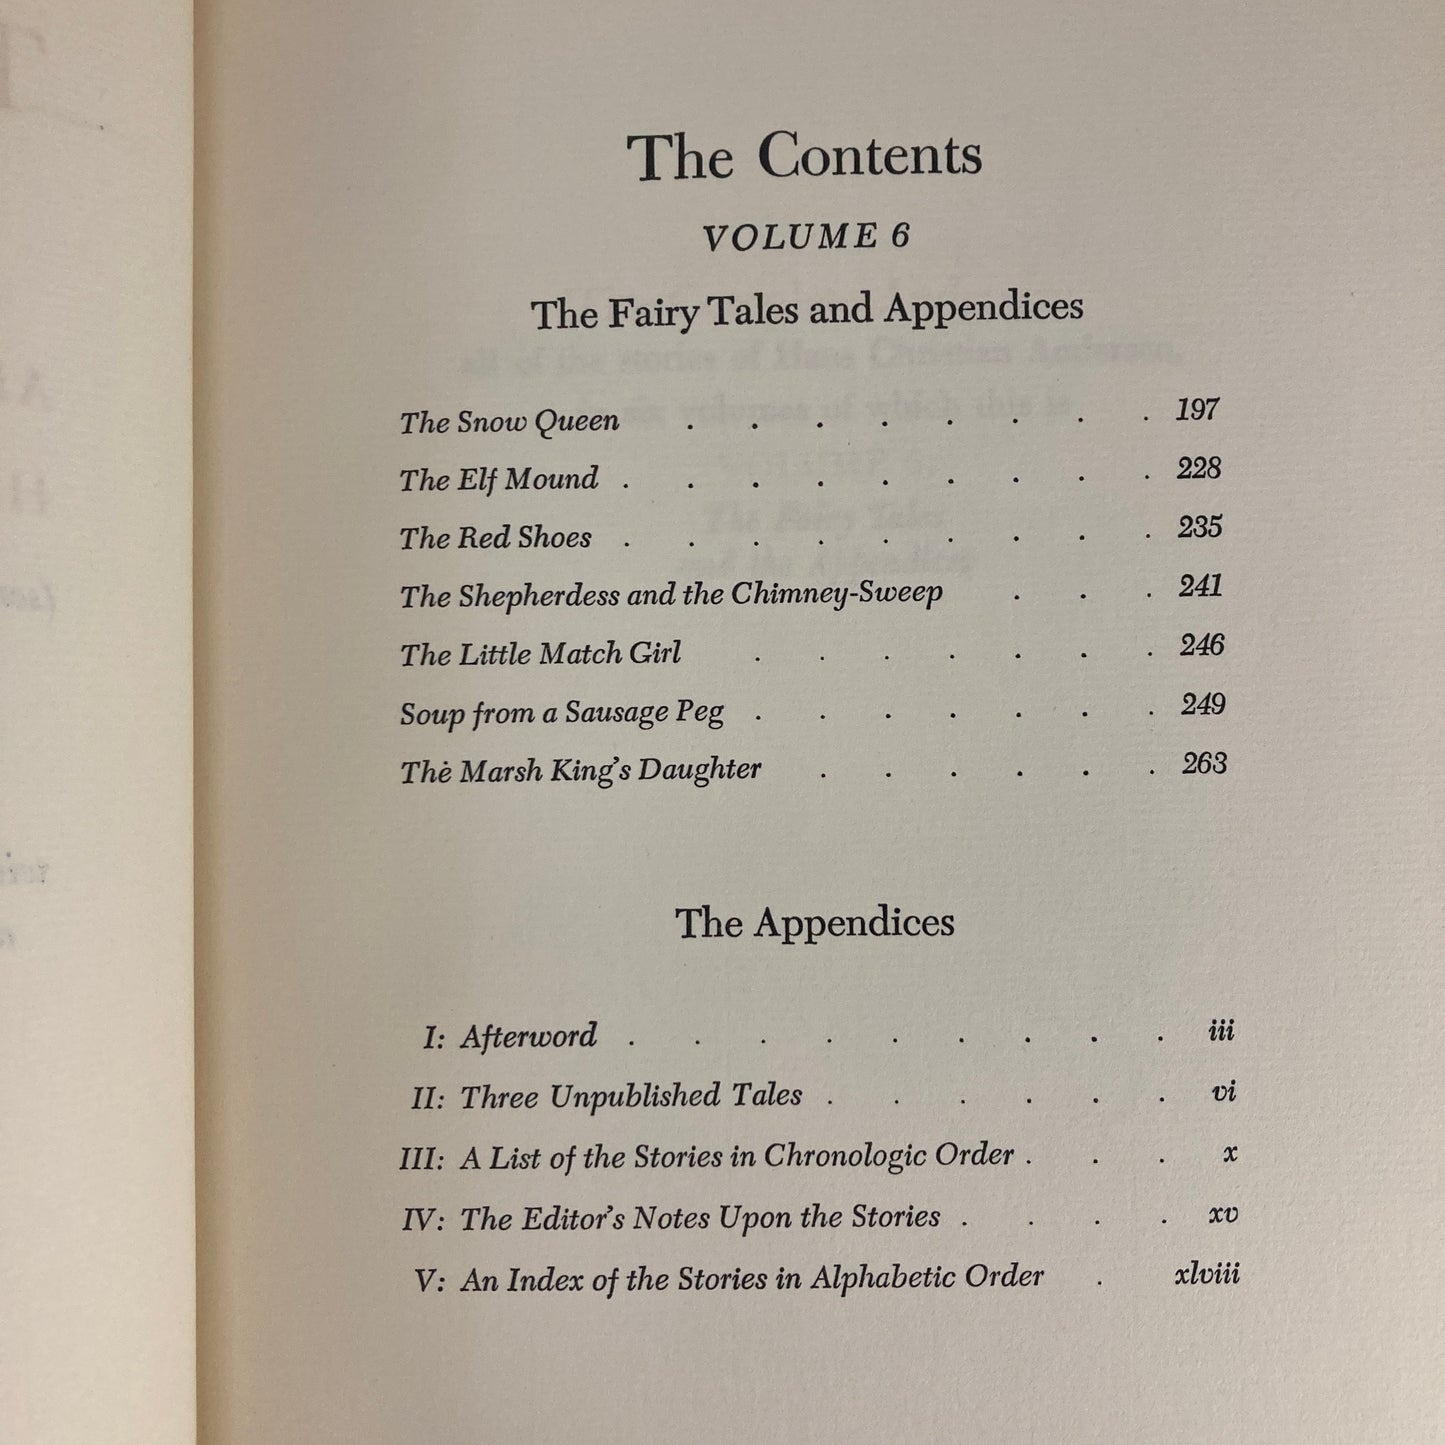 The Complete Andersen: Volume 6